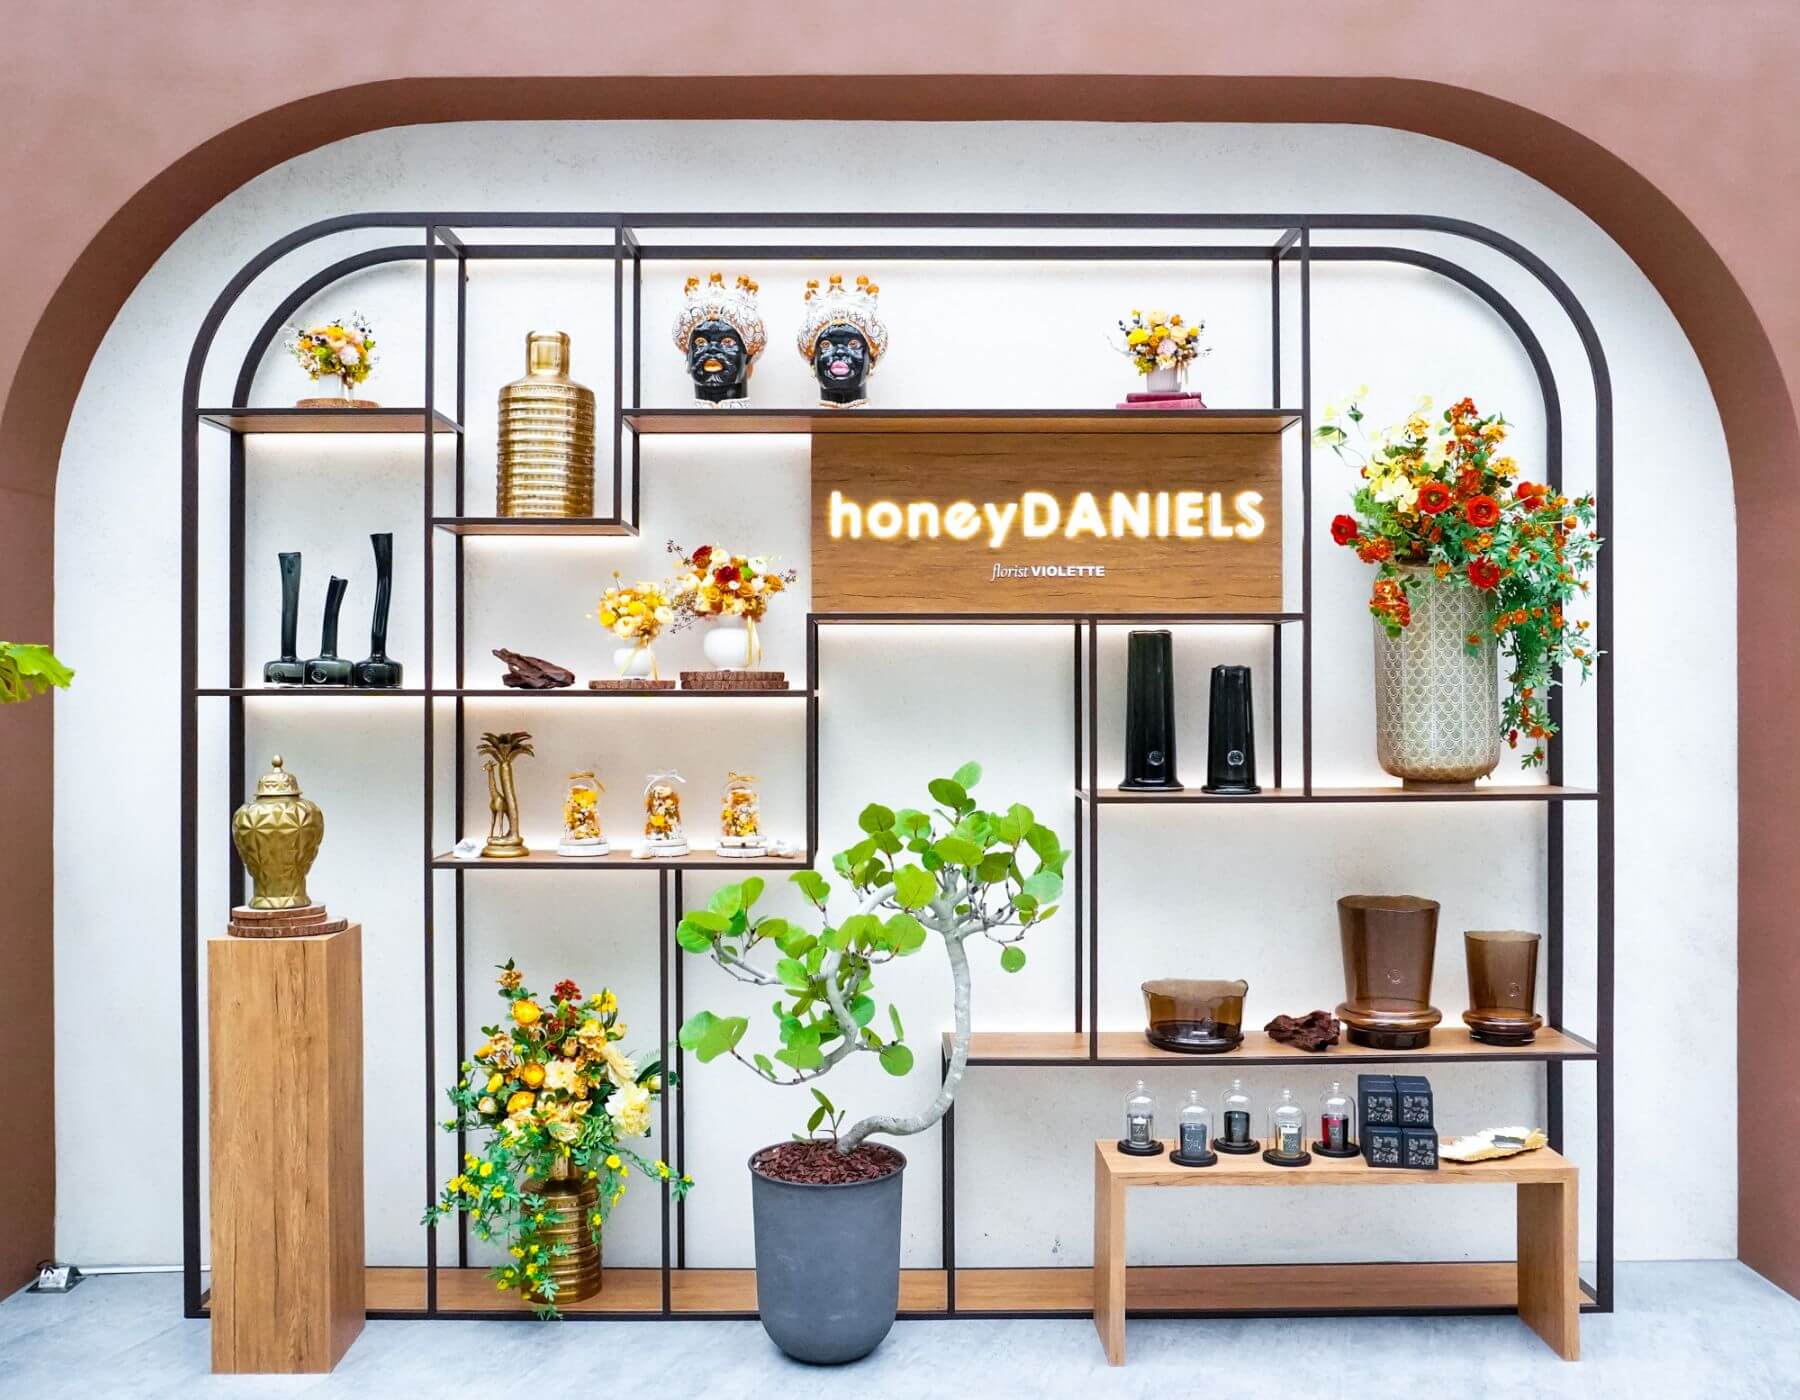 眾多國際精品指定合作對象「honeyDANIELS florist丹尼爾花藝」，運用花藝跨足大型展場佈置，巧妙融合「橘」、「吉」意象創意打造吉祥道主題布景。